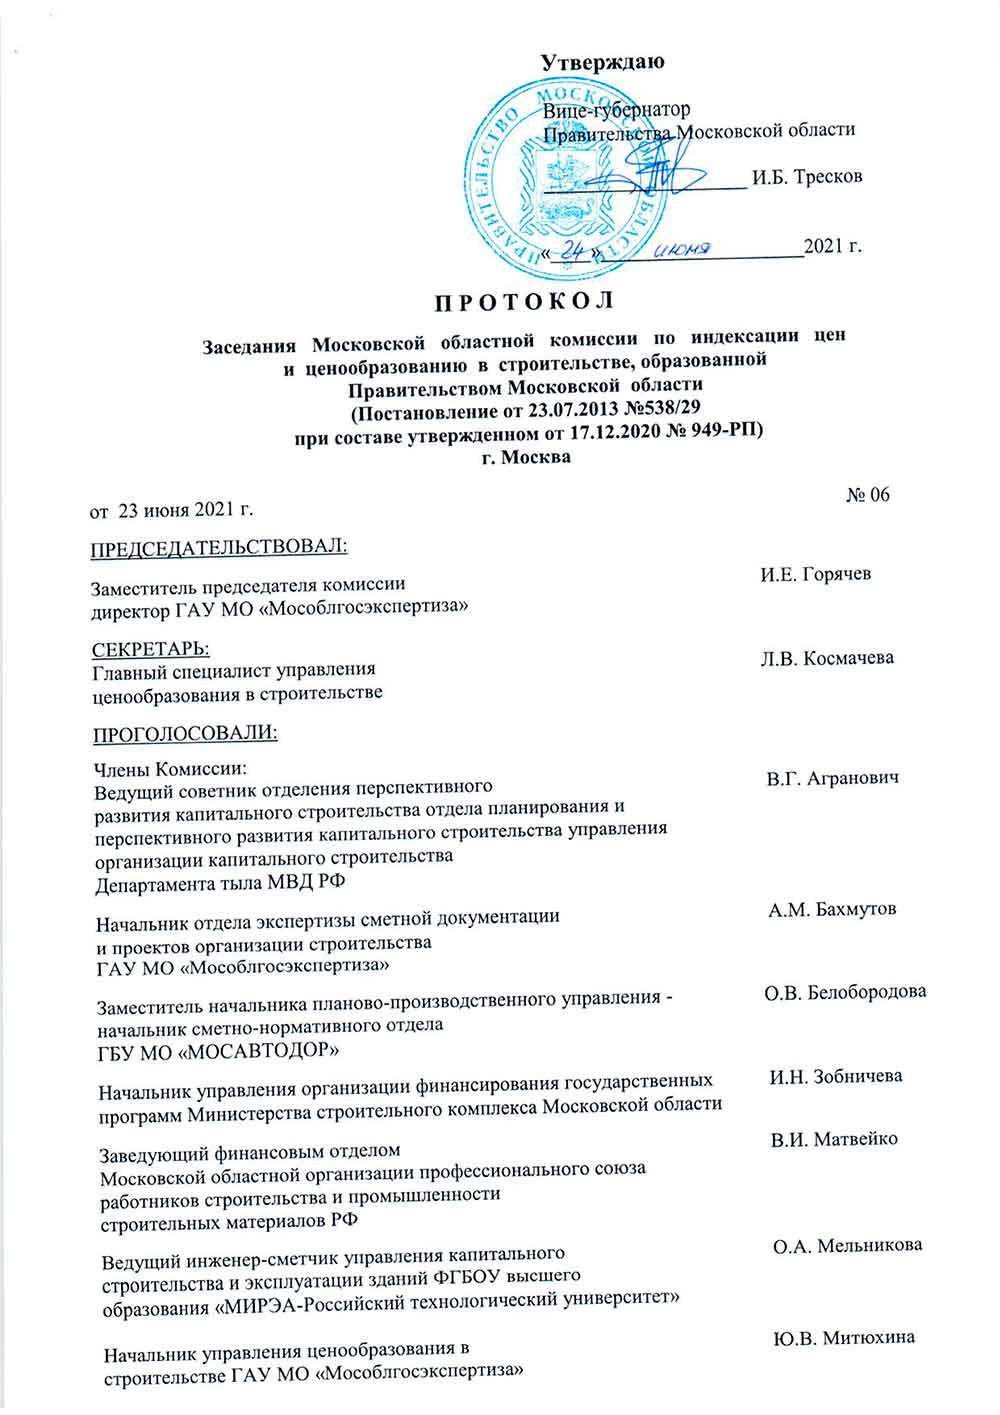 Протокол Мособлгосэкспертизы №06 от 23.06.2021 года